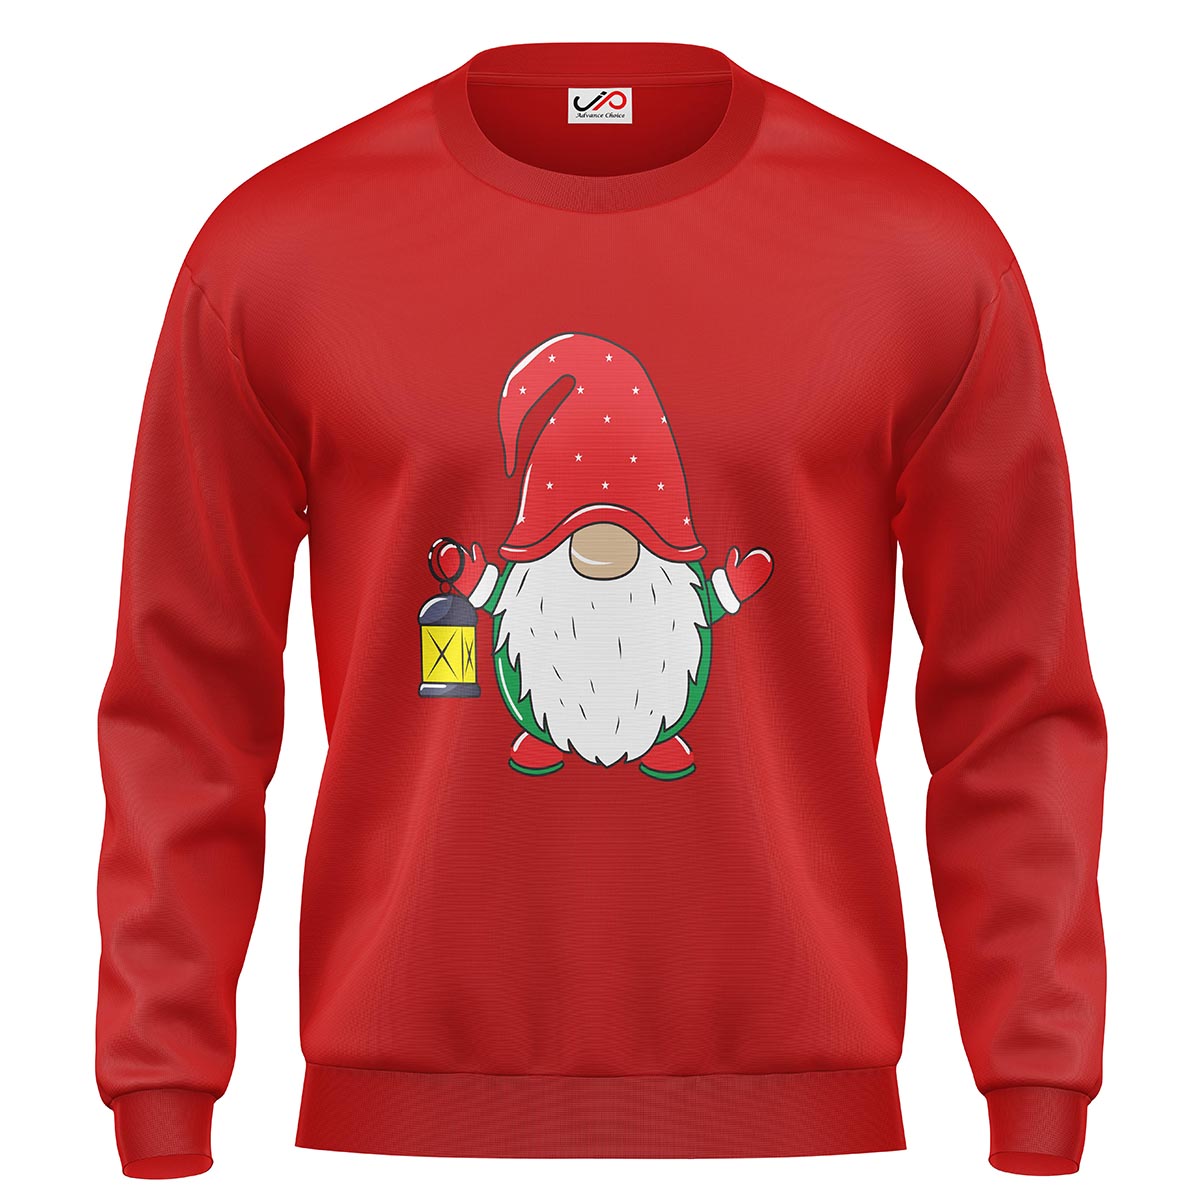 JP Christmas Shirts for Kids Unisex Santa Printed Ugly Christmas Sweat Shirts/Tops